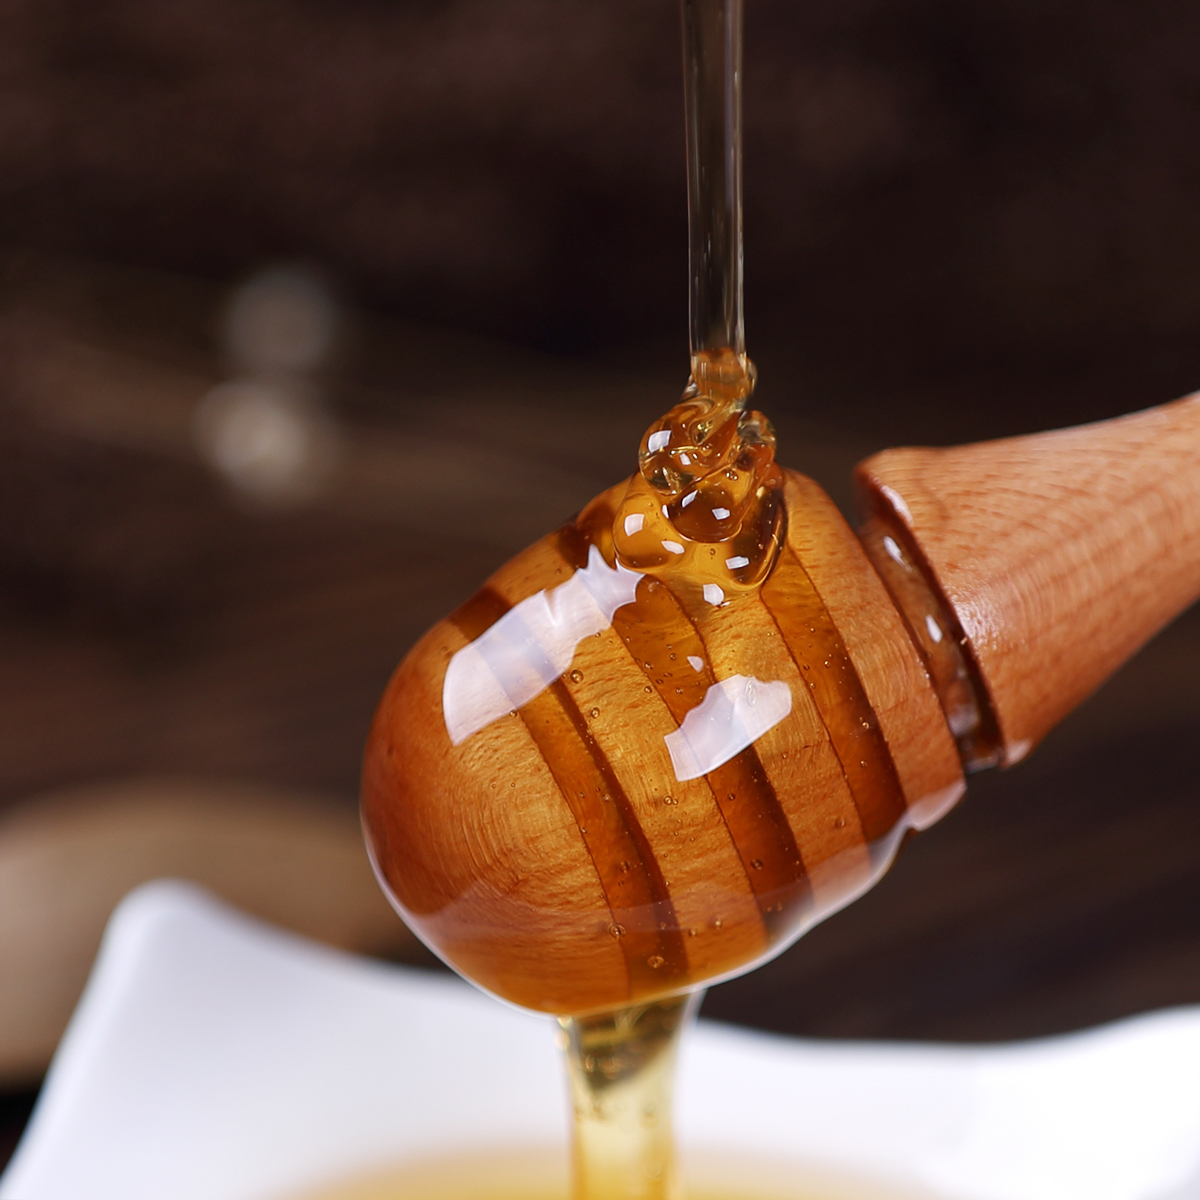 杨氏蜜蜂园 油菜蜂蜜油菜花蜜500g 自然成熟蜂蜜